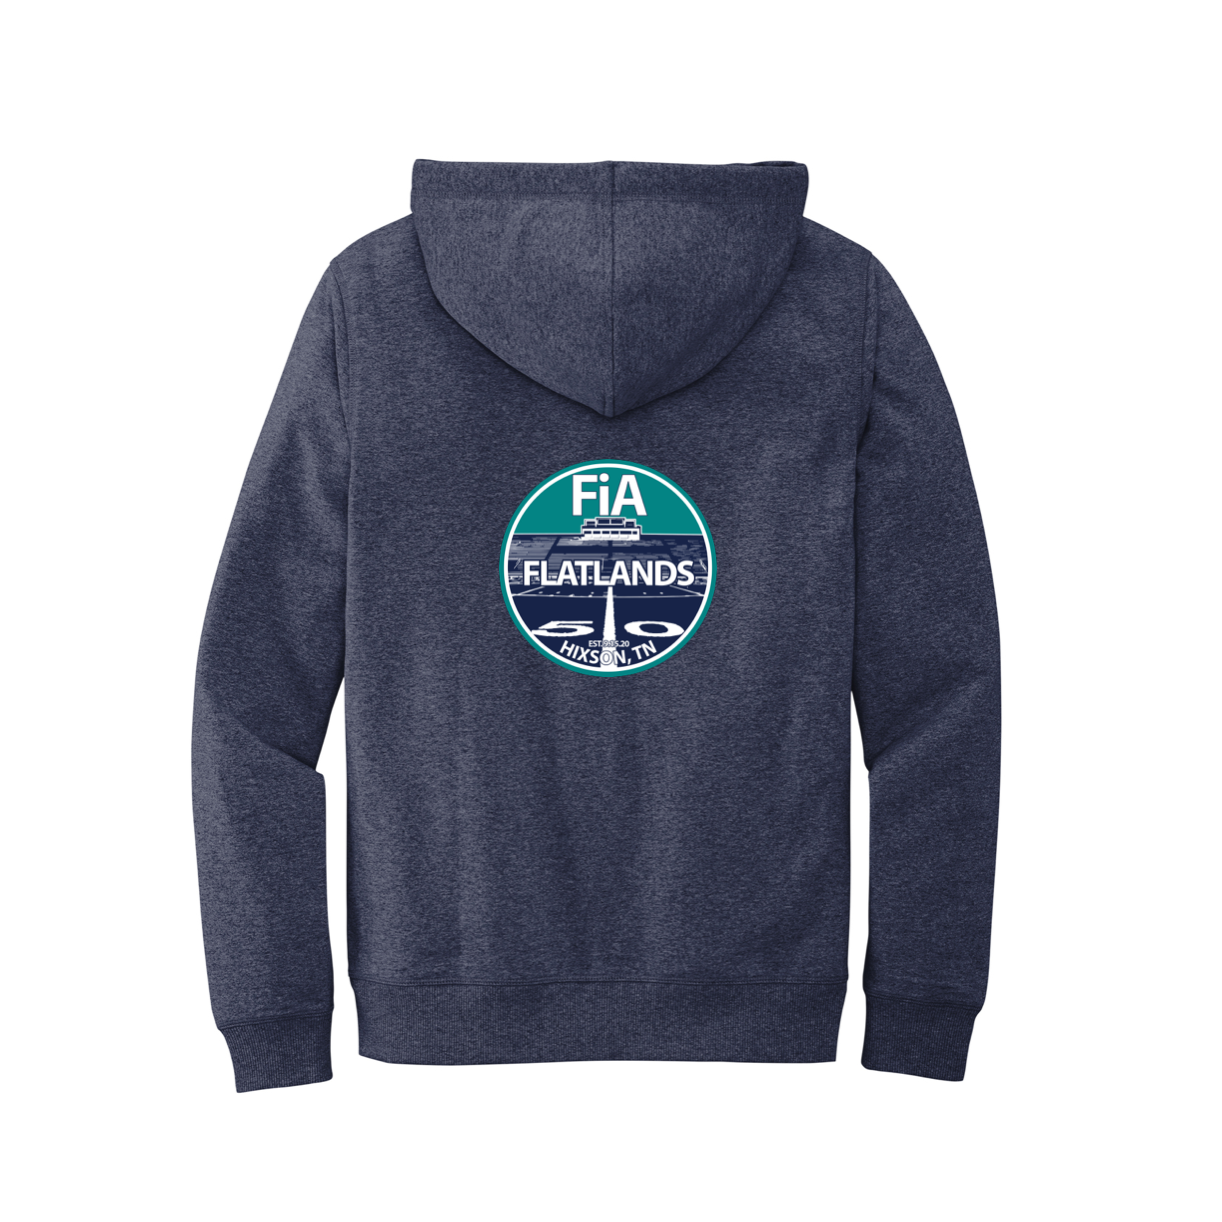 FiA Flatlands Shirts Pre-Order Sept 2022